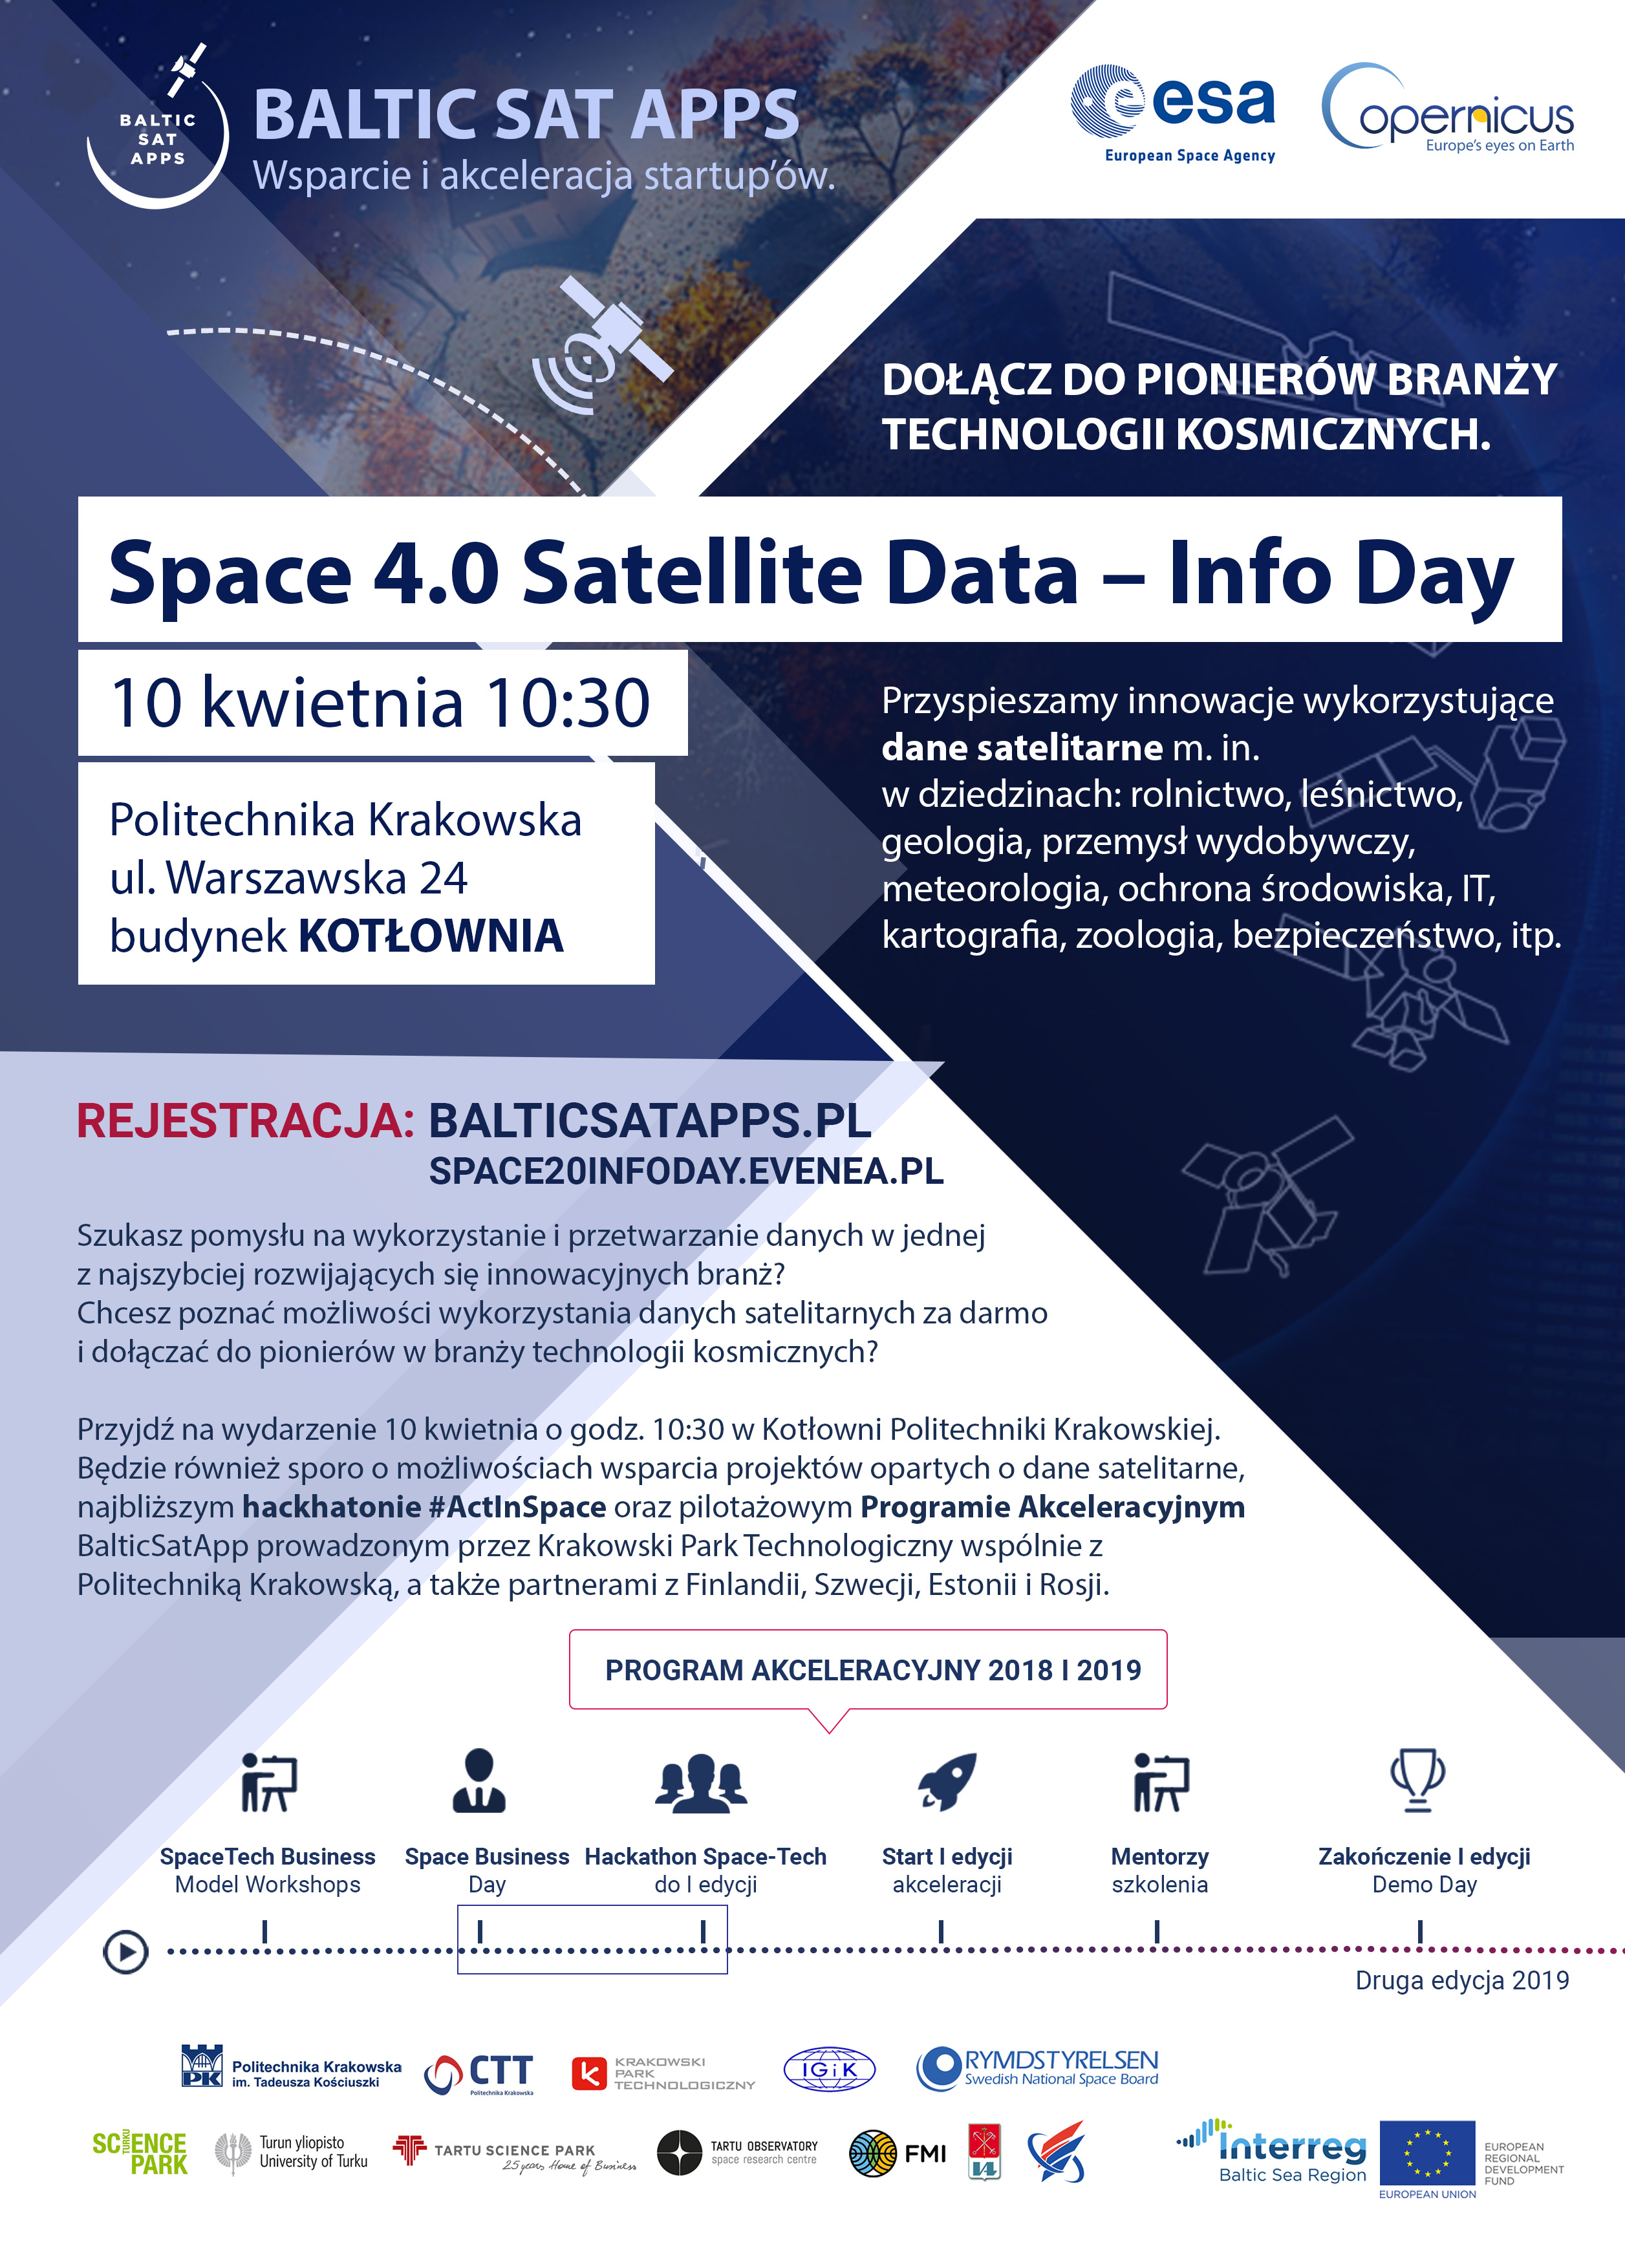 Space 4.0 Satellite Data – InfoDay. Dołącz do pionierów branży kosmicznej